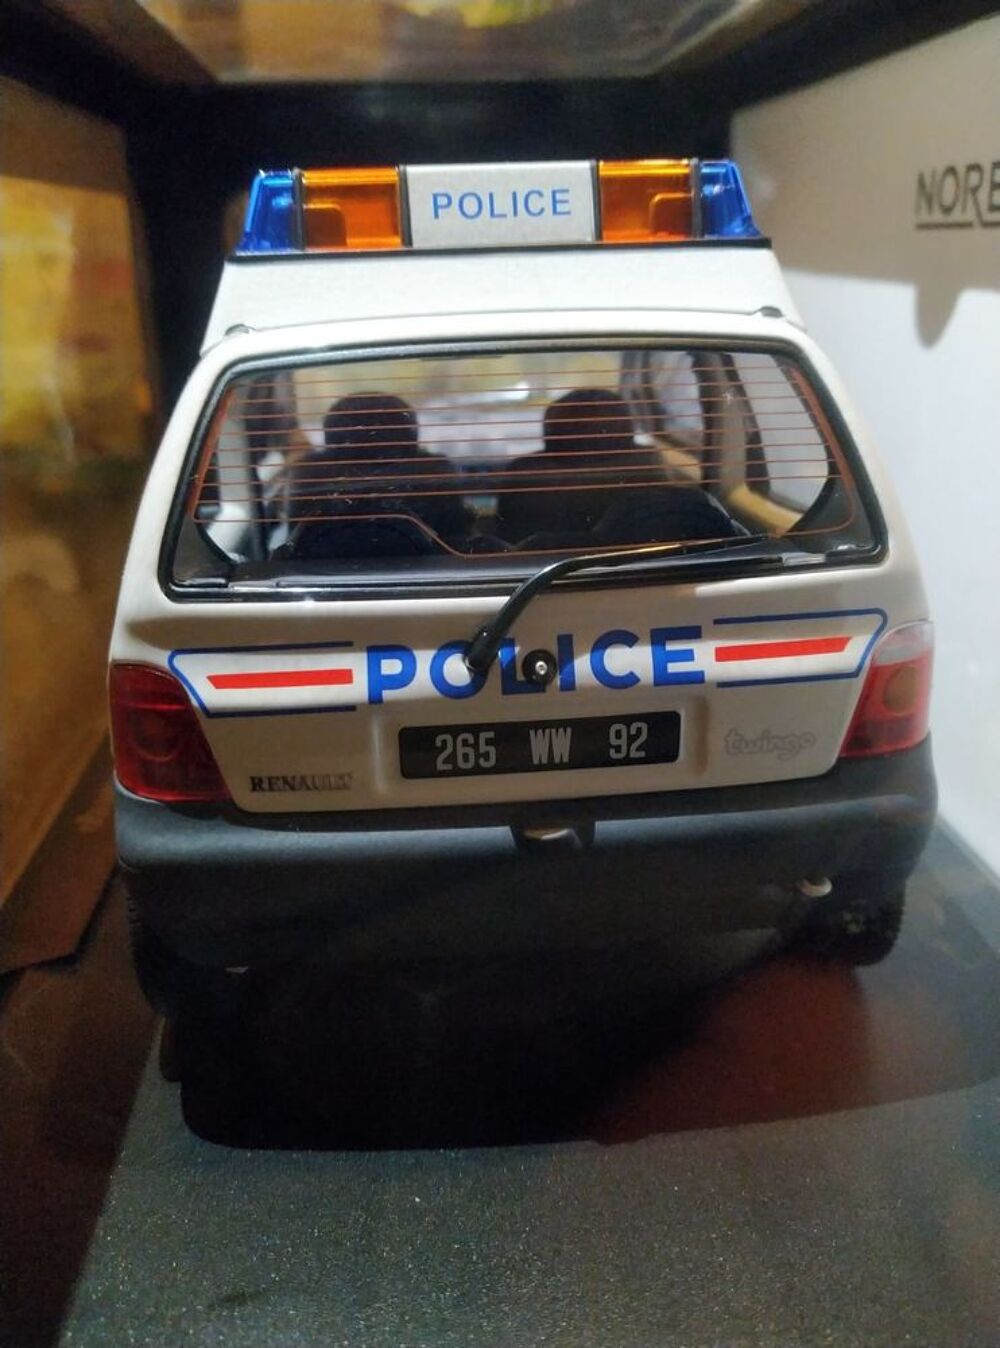 RENAULT TWINGO 1995 POLICE NOREV 1/18 